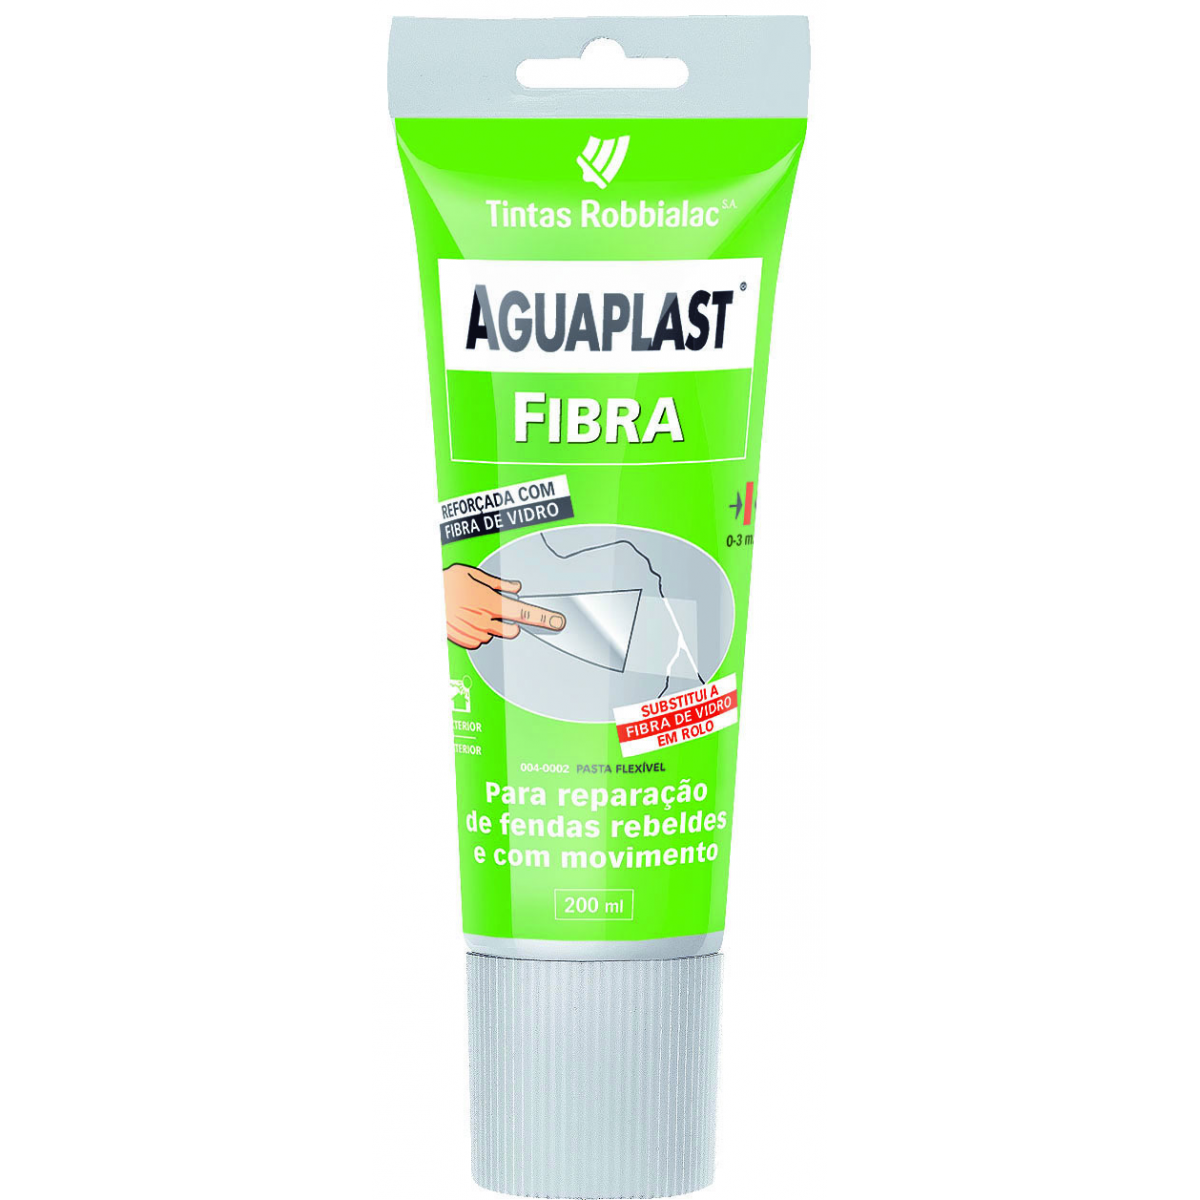 Aguaplast fibra - Serra Pinturas